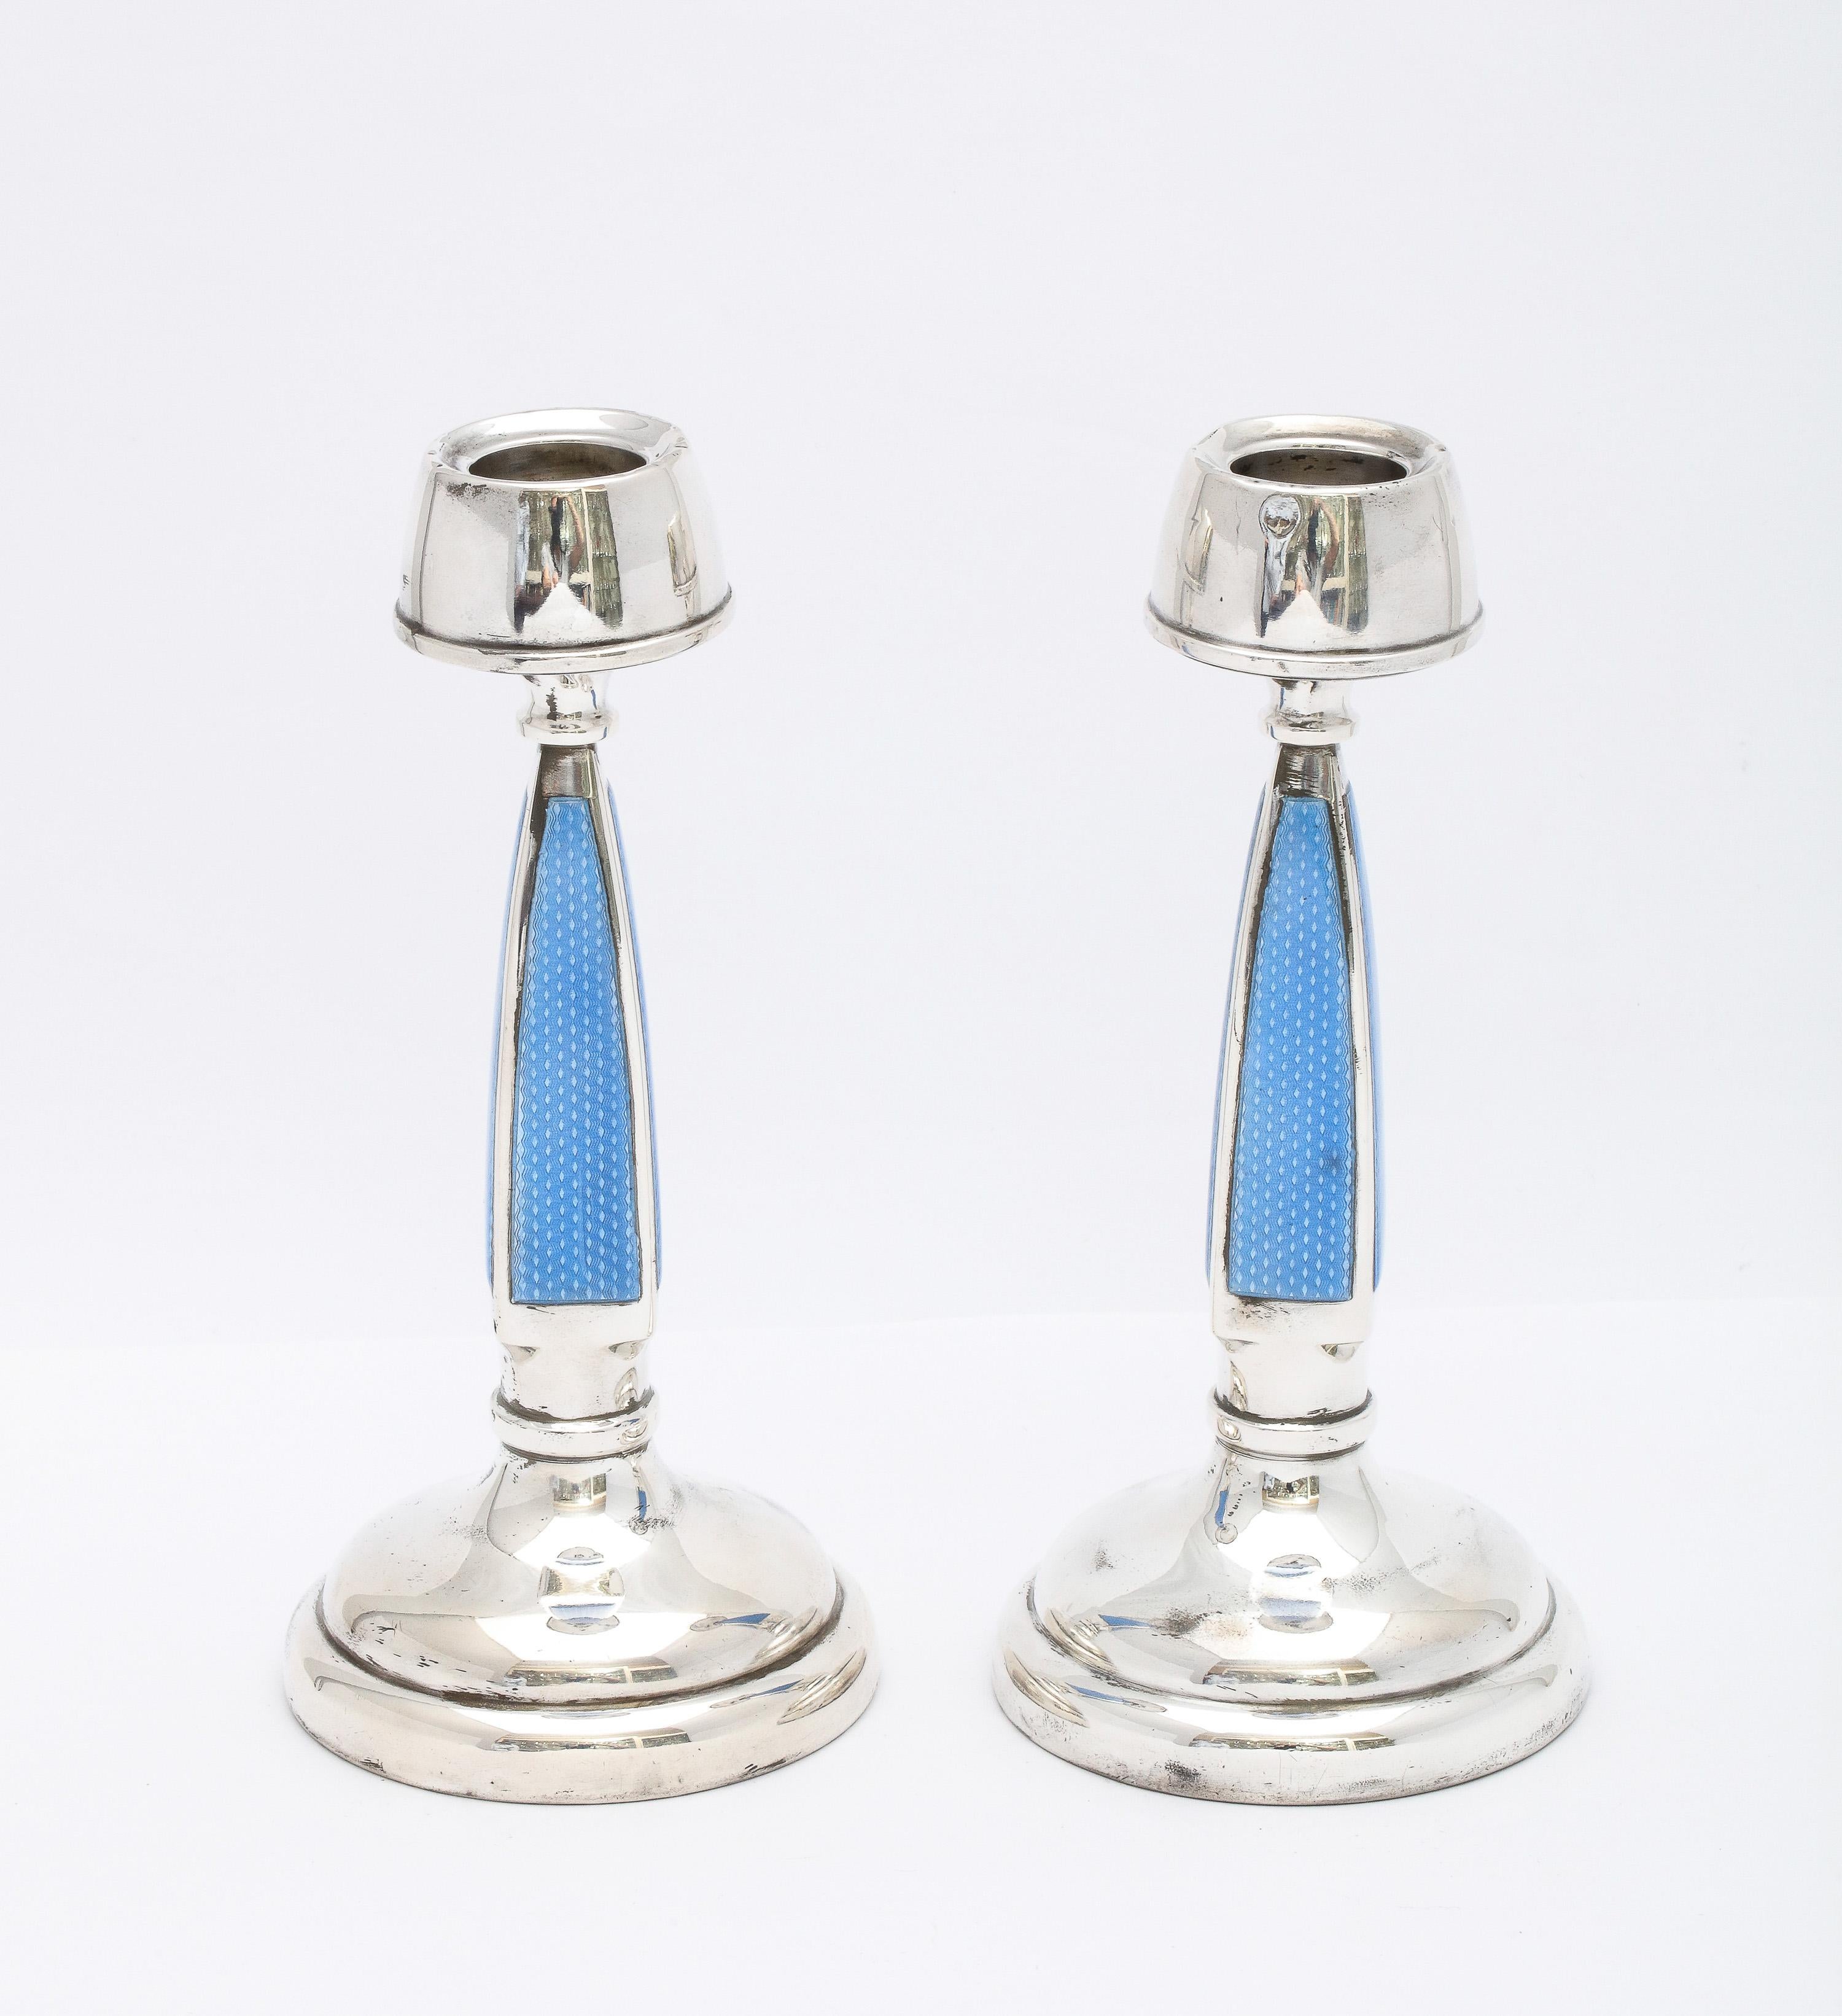 Seltenes Paar Art-Deco-Kerzenhalter aus Sterlingsilber und blauer Guilloche-Emaille, Birmingham, England, Jahrespunze 1927, A.L. Davenport - Hersteller. Die Mitte jeder viereckigen Säule eines jeden Kerzenhalters ist in einem schönen blauen